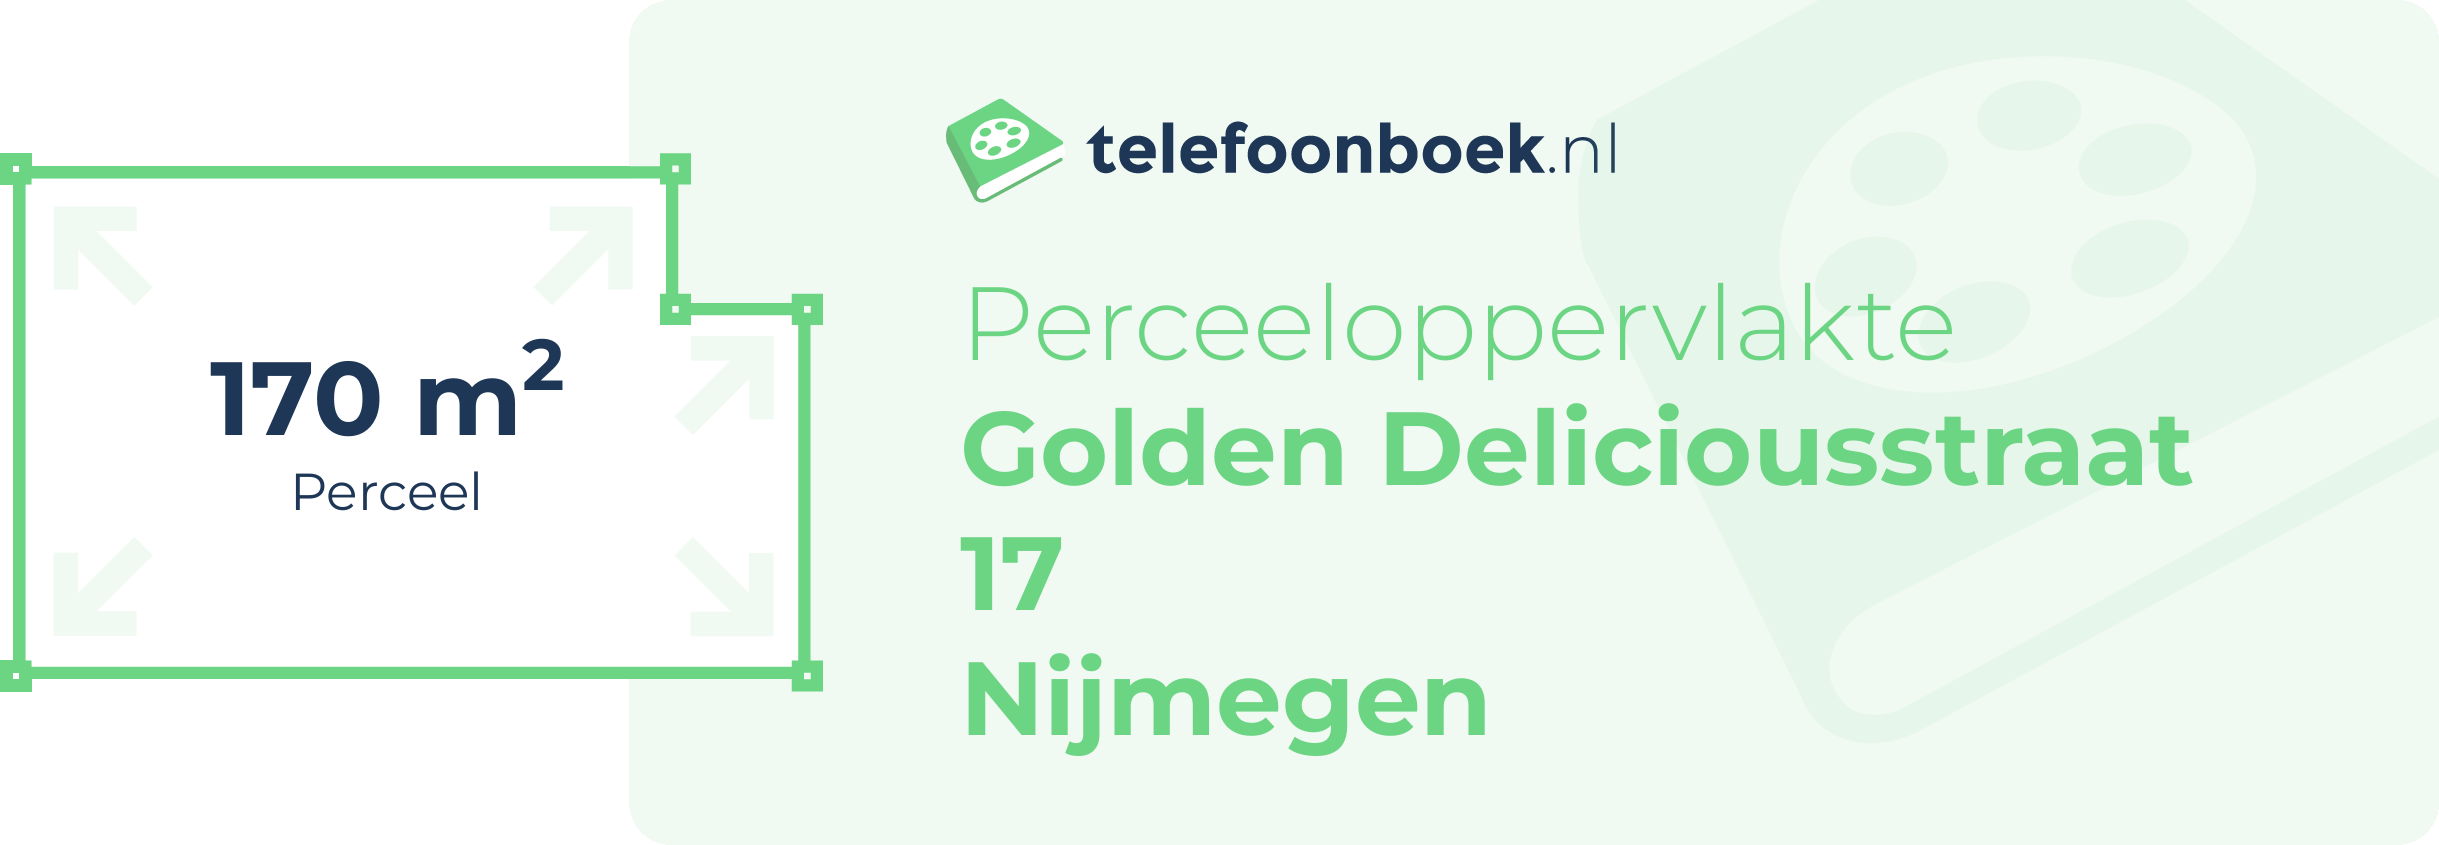 Perceeloppervlakte Golden Deliciousstraat 17 Nijmegen